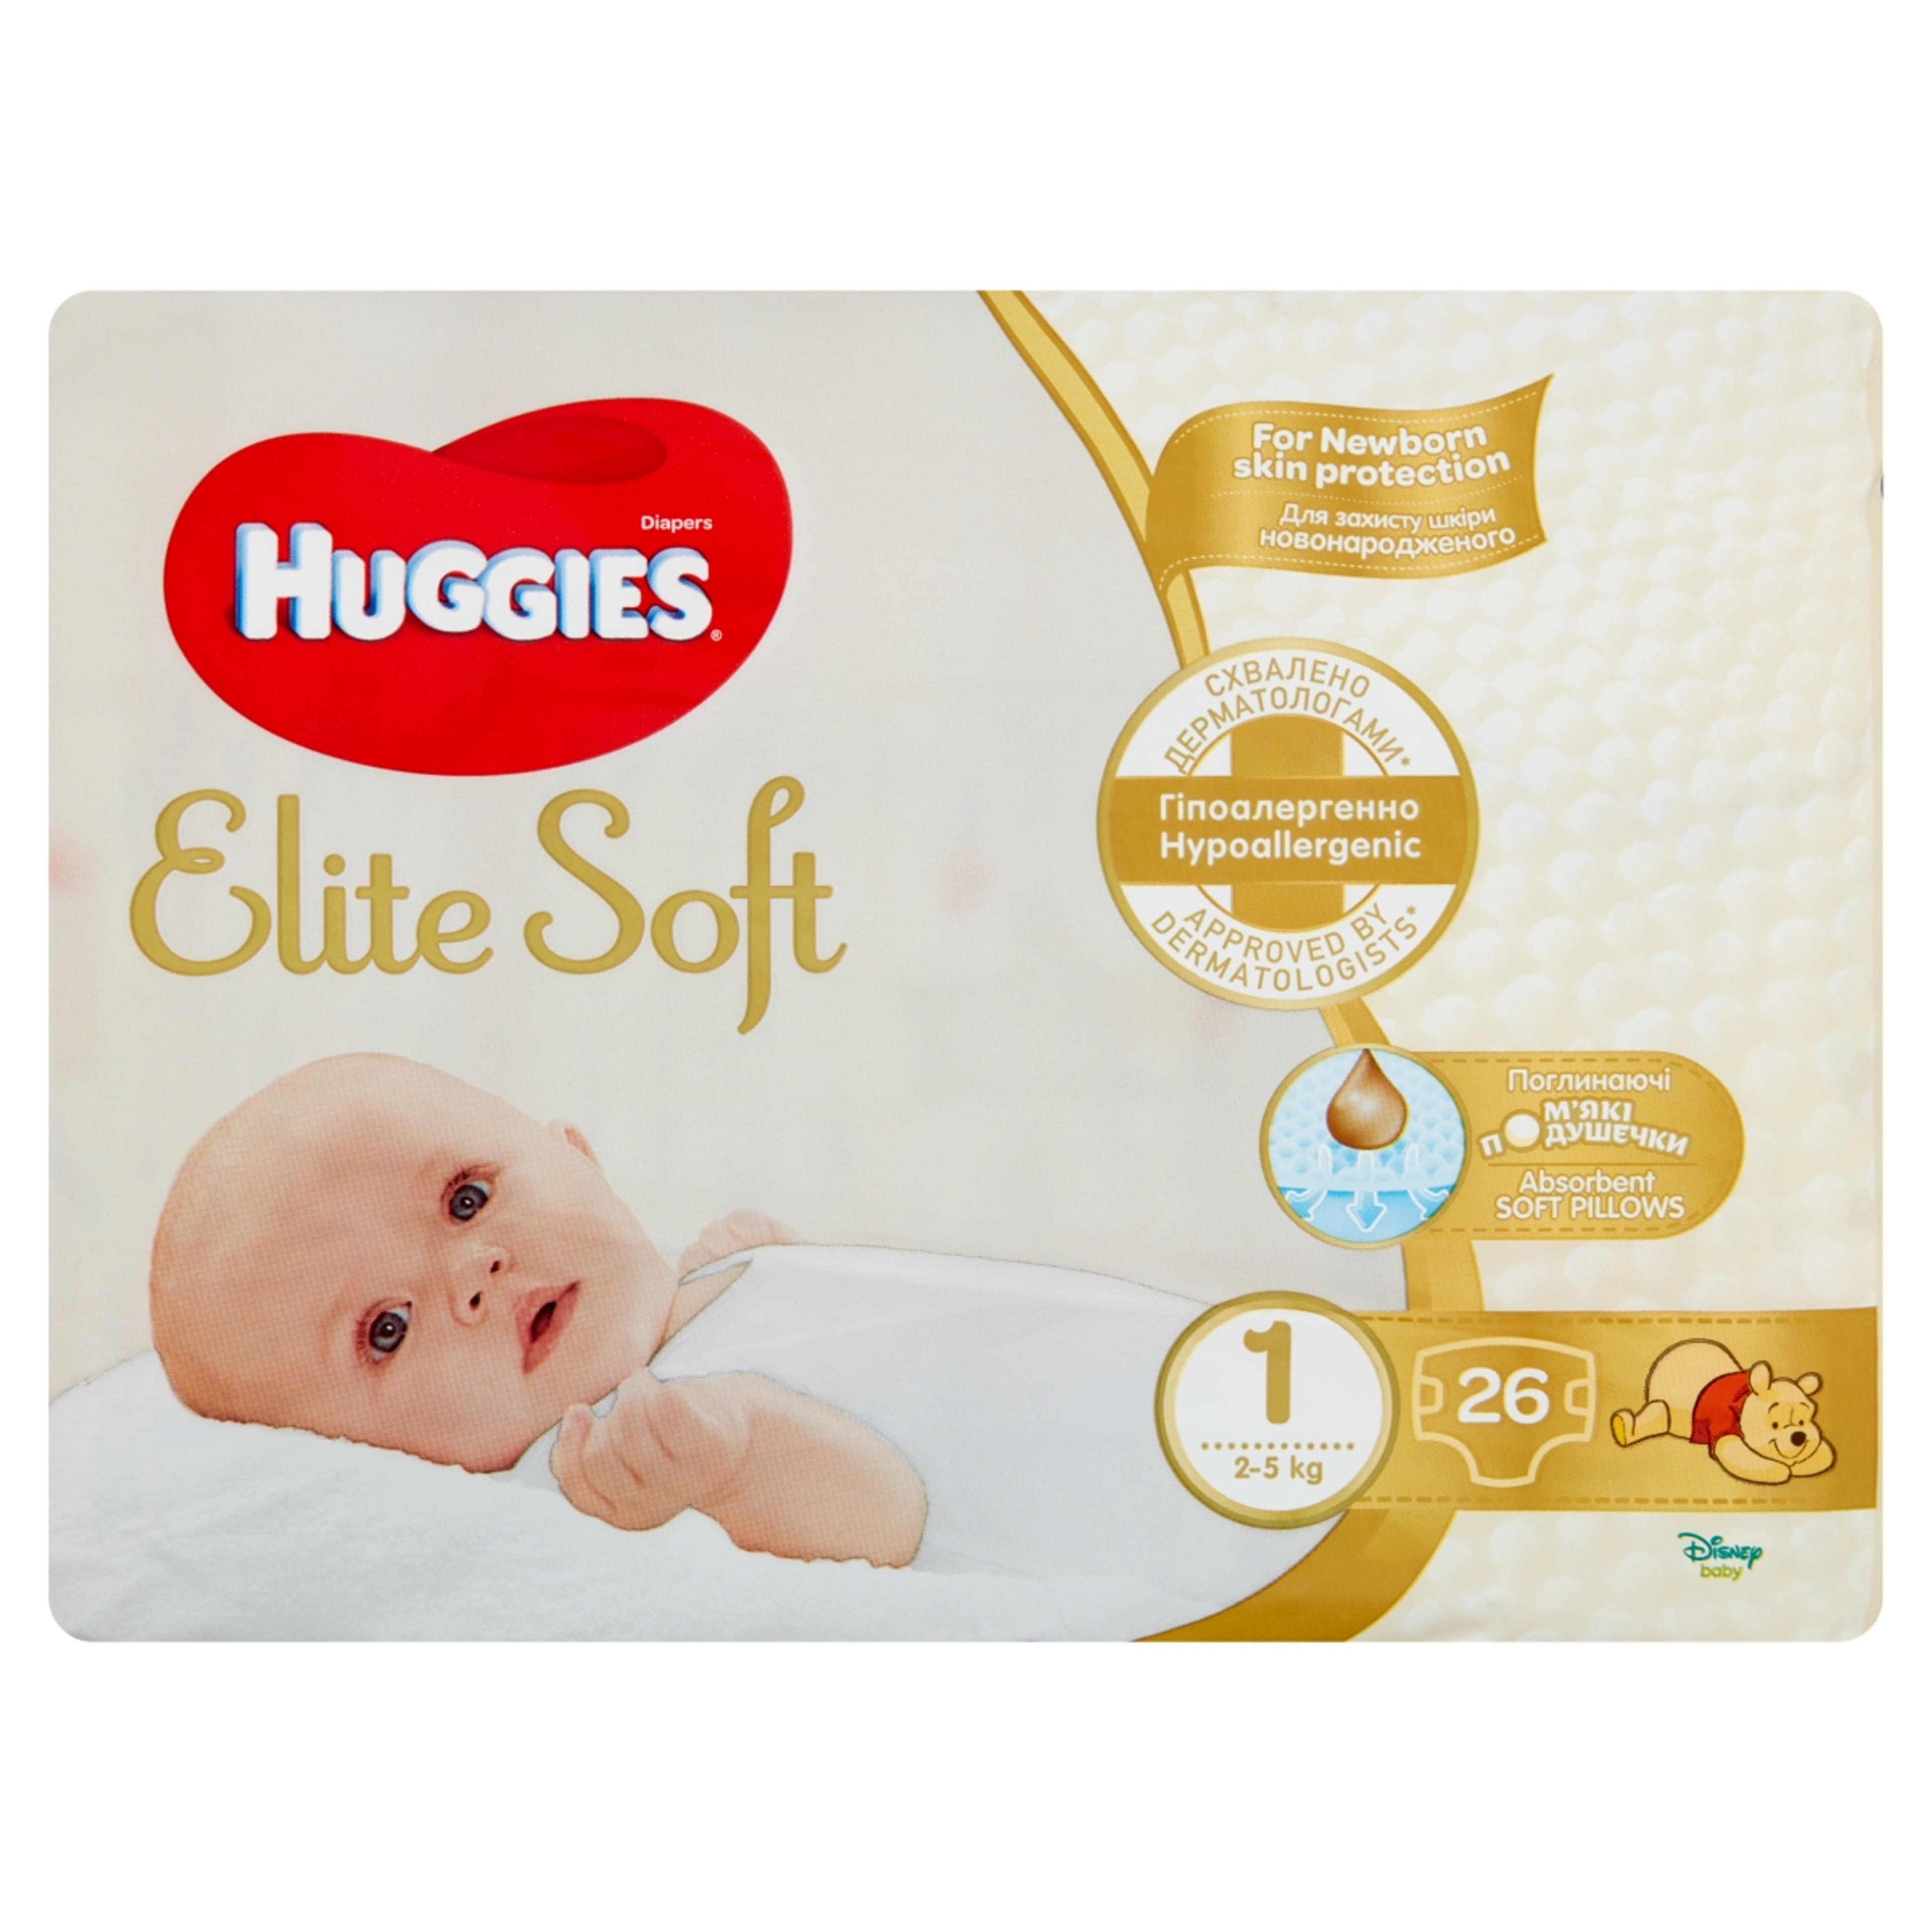 Huggies Elite Soft 1 3-5 kg pelenka újszülött csecsemők számára - 26 db